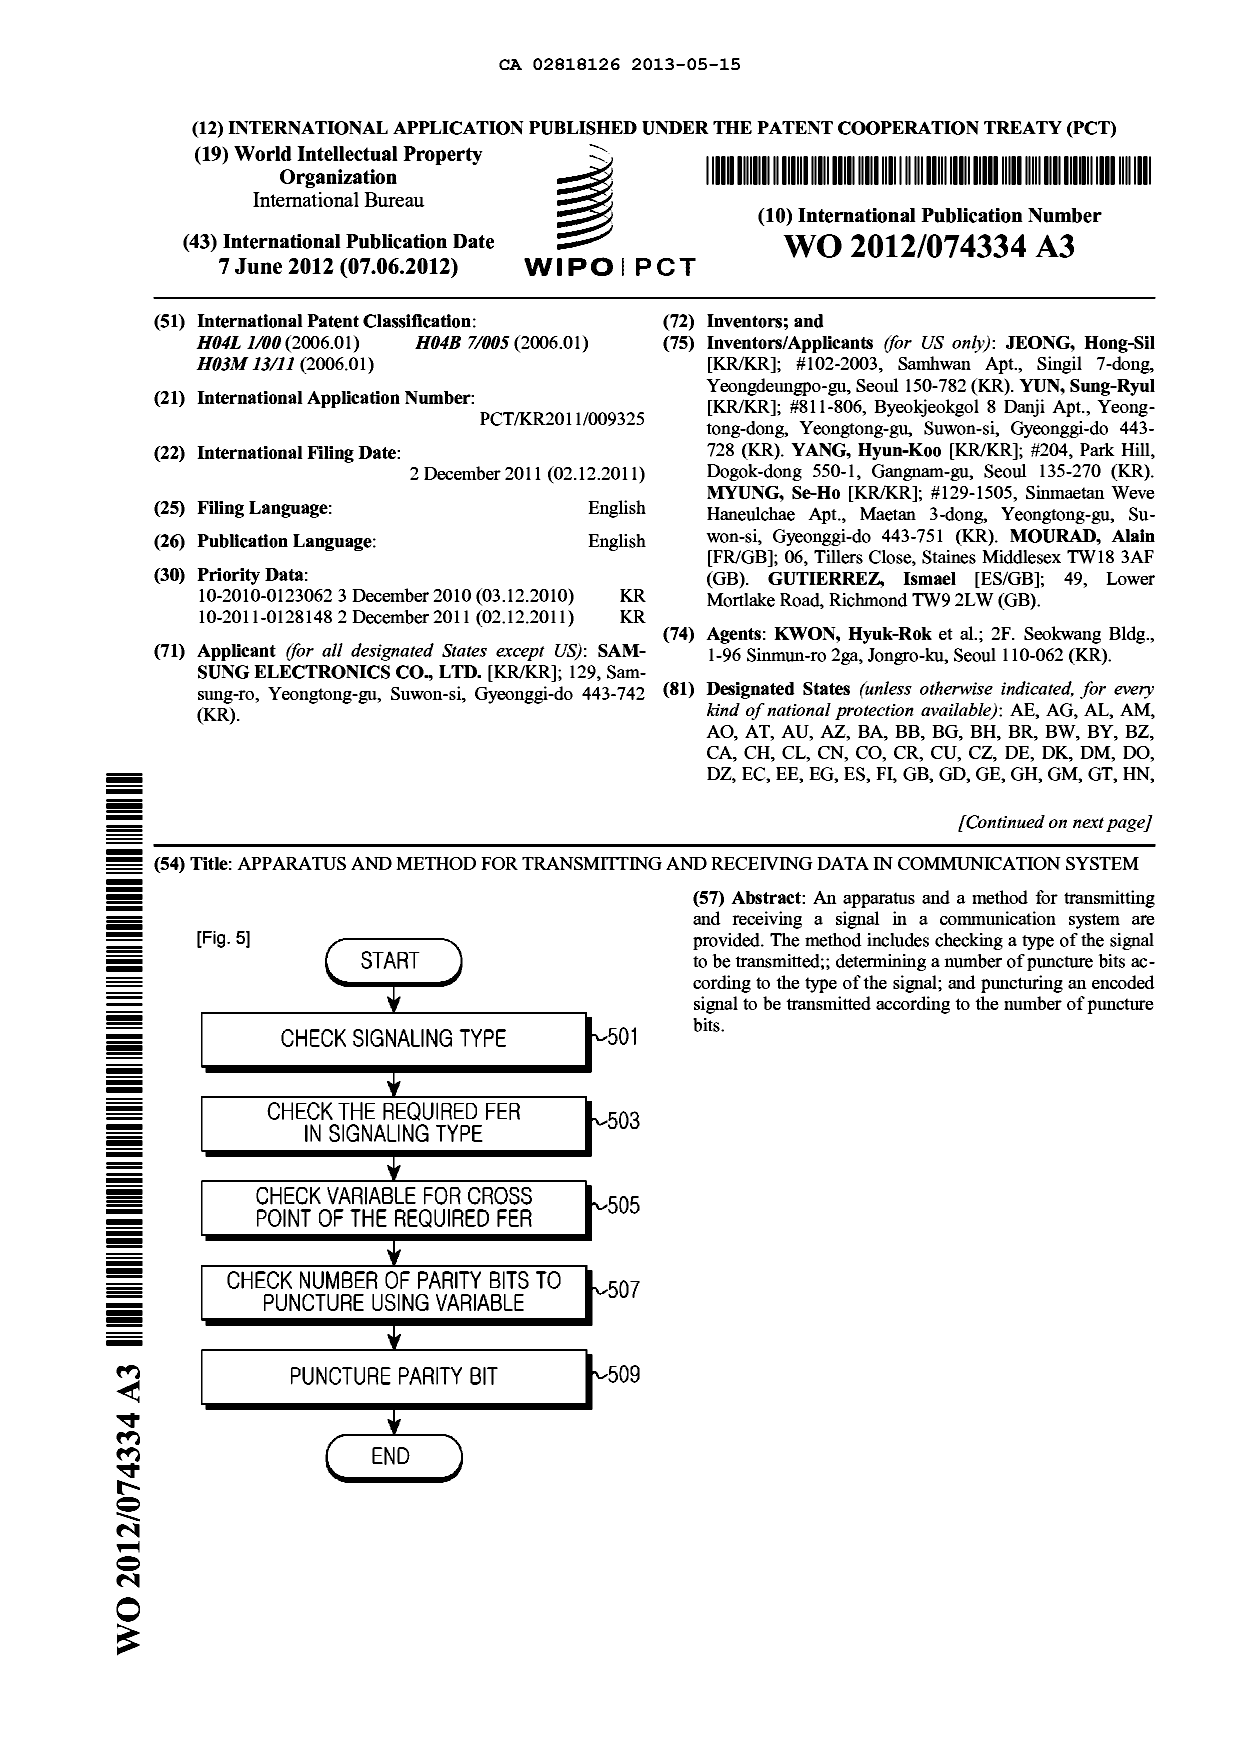 Document de brevet canadien 2818126. Abrégé 20130515. Image 1 de 2